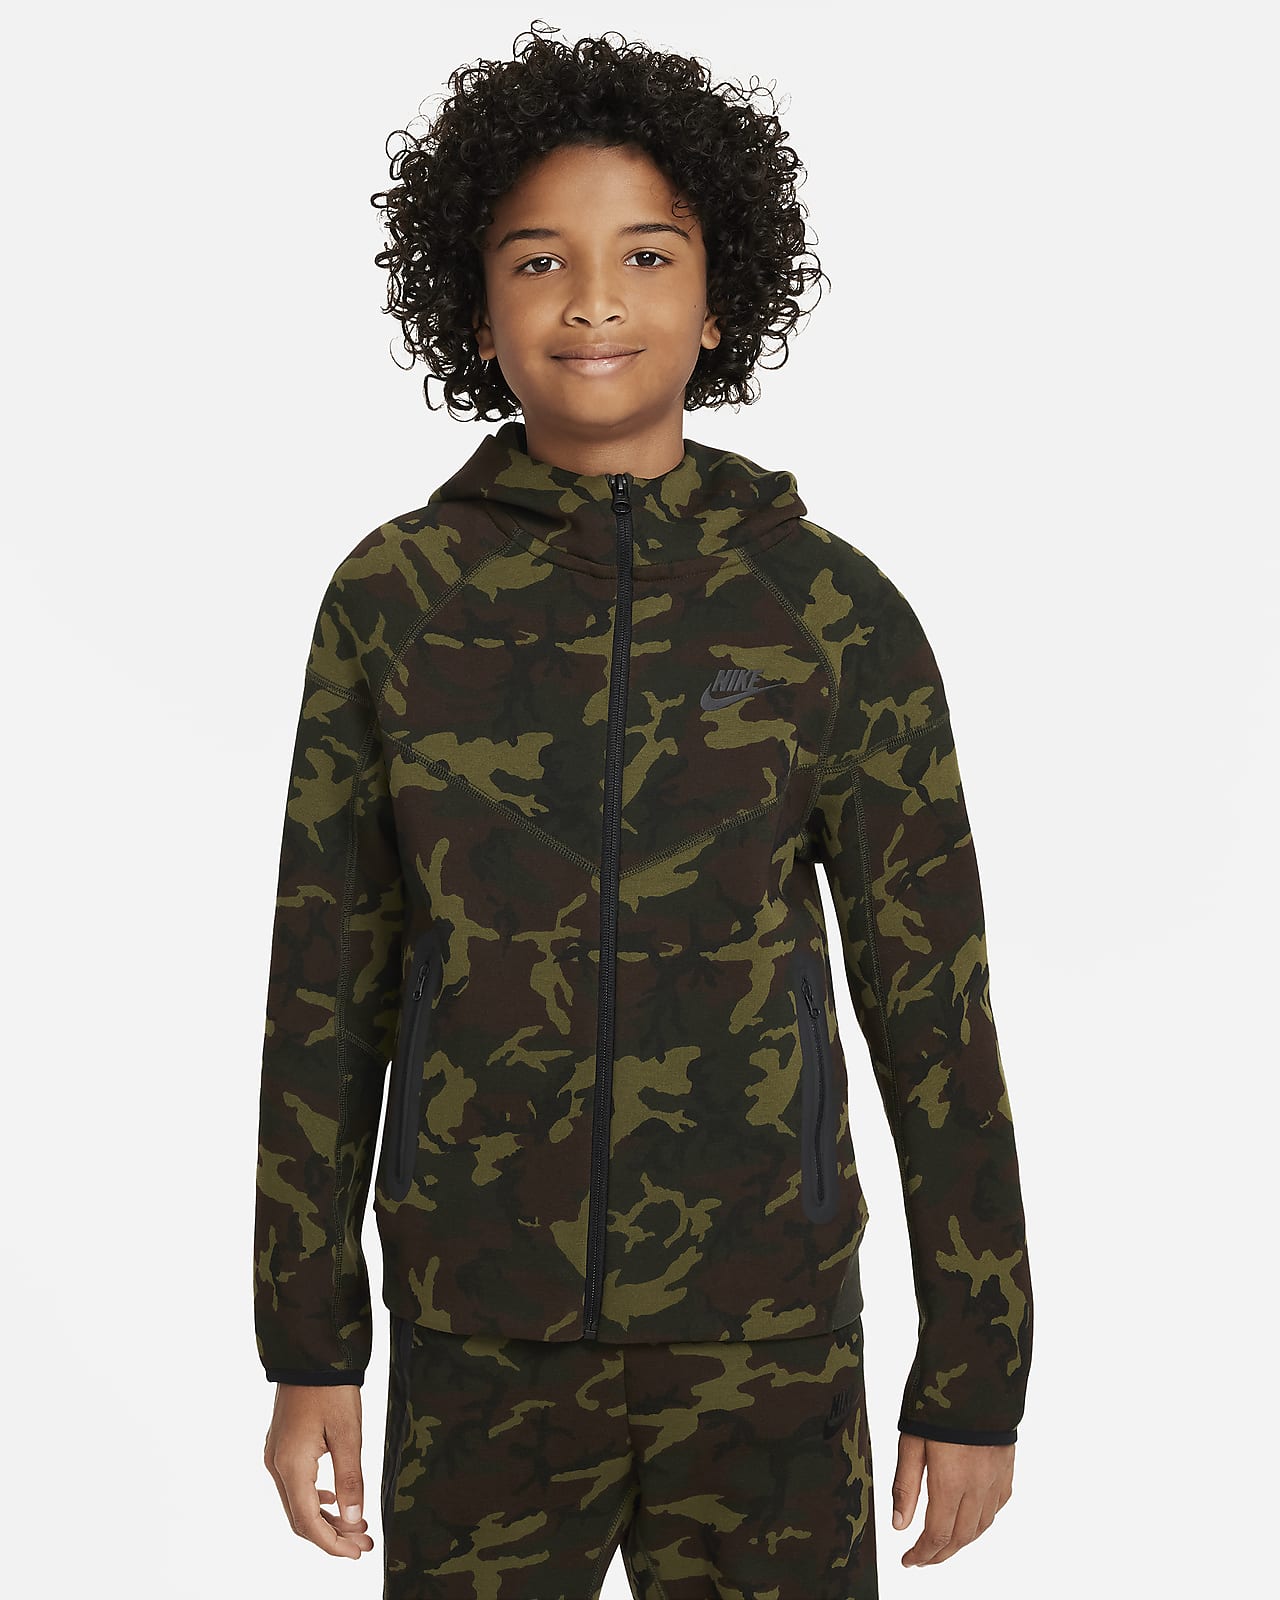 Sweat à capuche et zip motif camouflage Nike Tech Fleece pour ado (garçon)